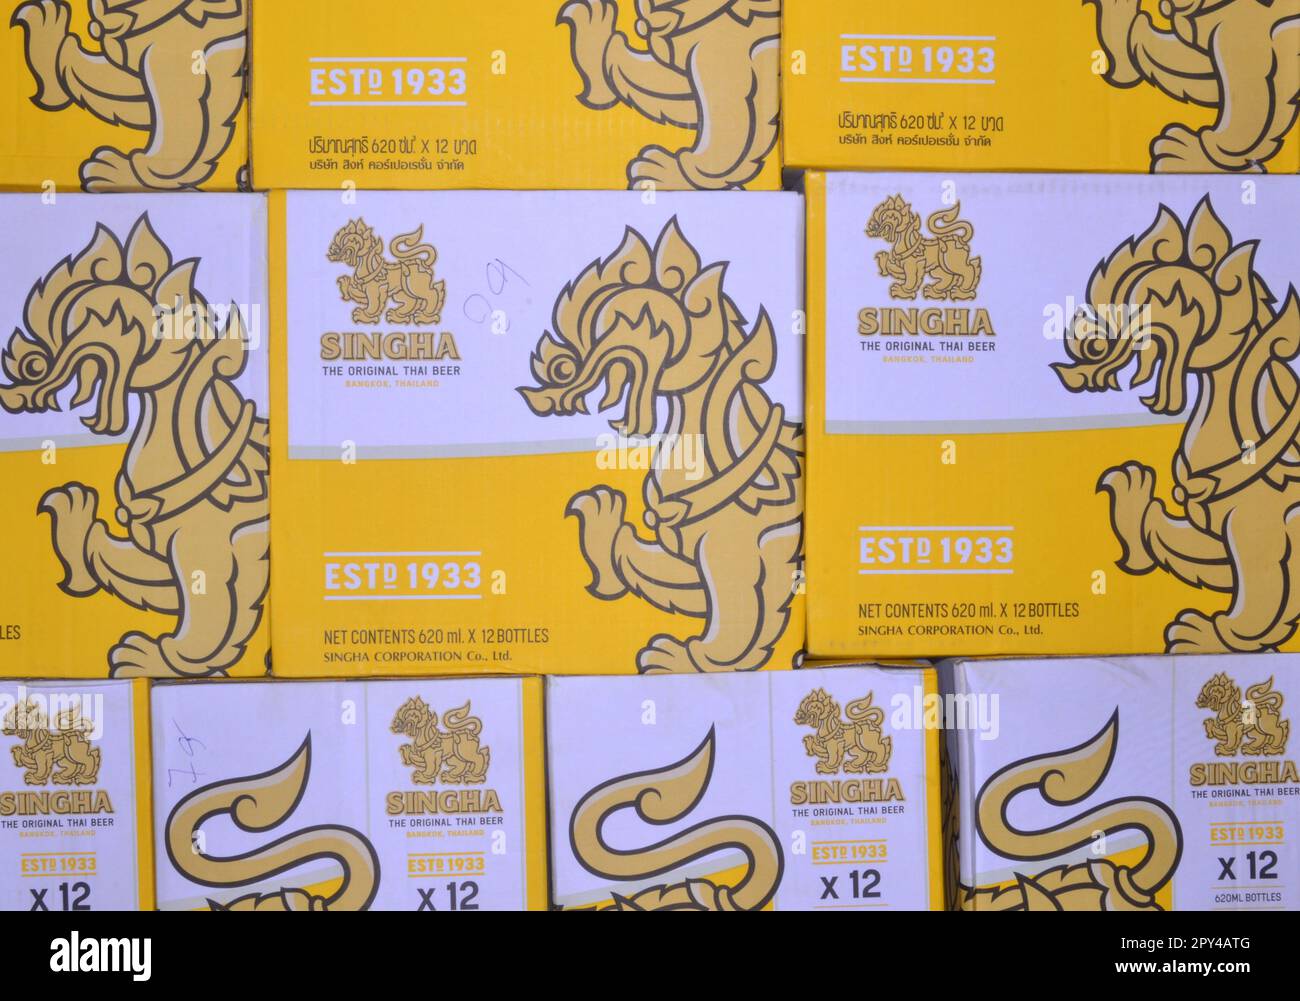 Plusieurs cartons de bière, toute la bière Singha, une bière populaire en Thaïlande, en Asie. Banque D'Images